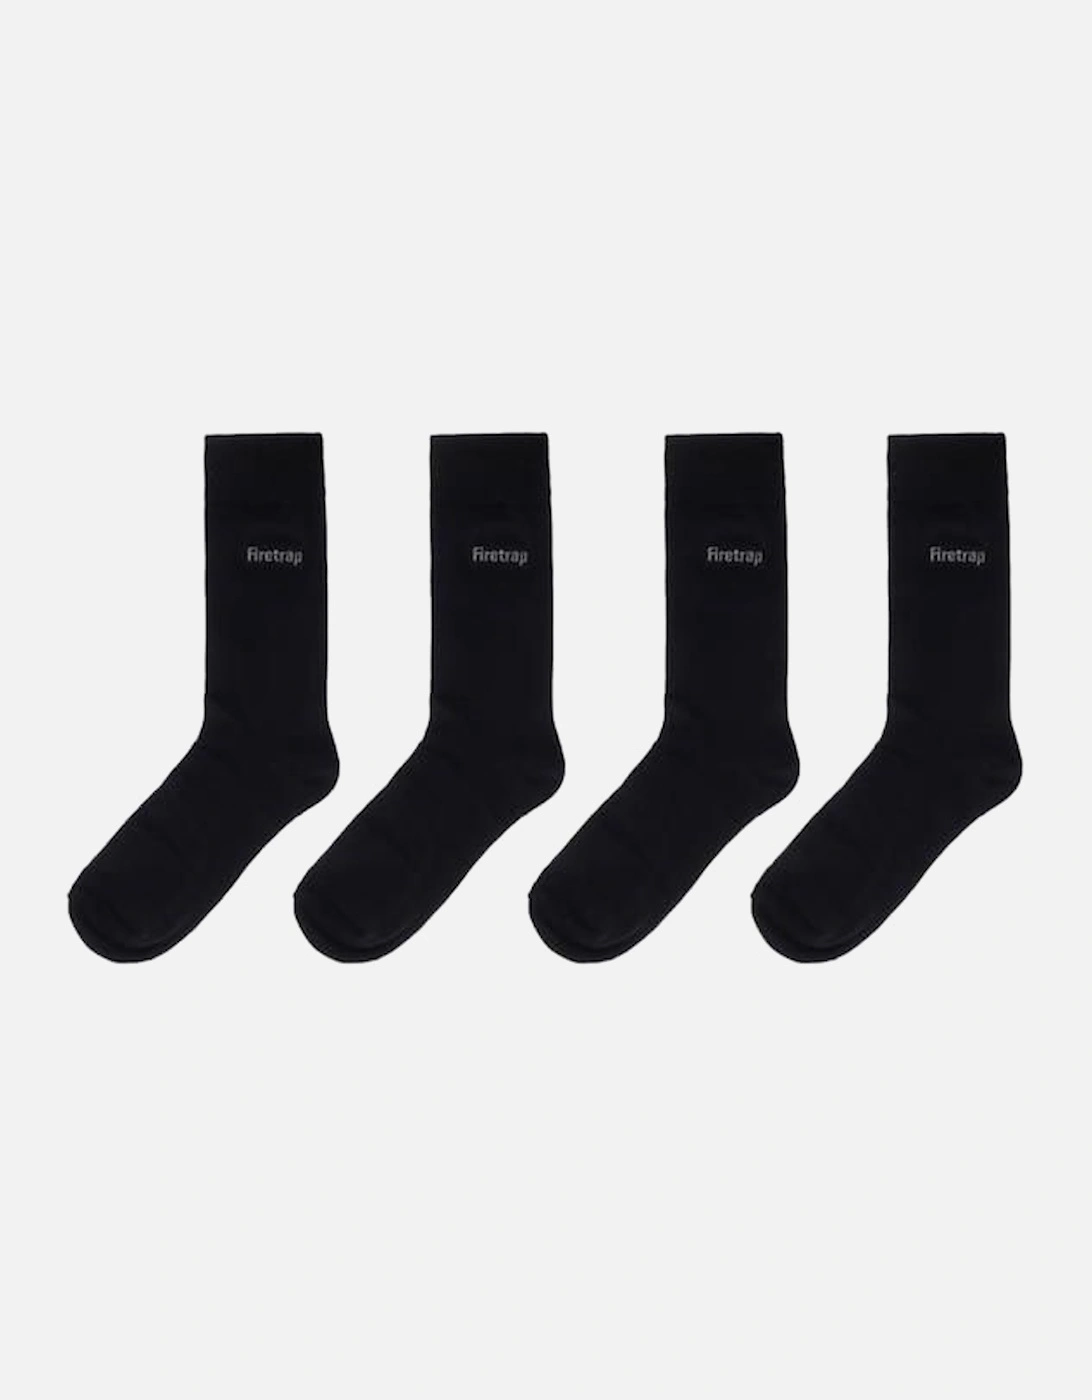 Mens Gift Socks, 2 of 1